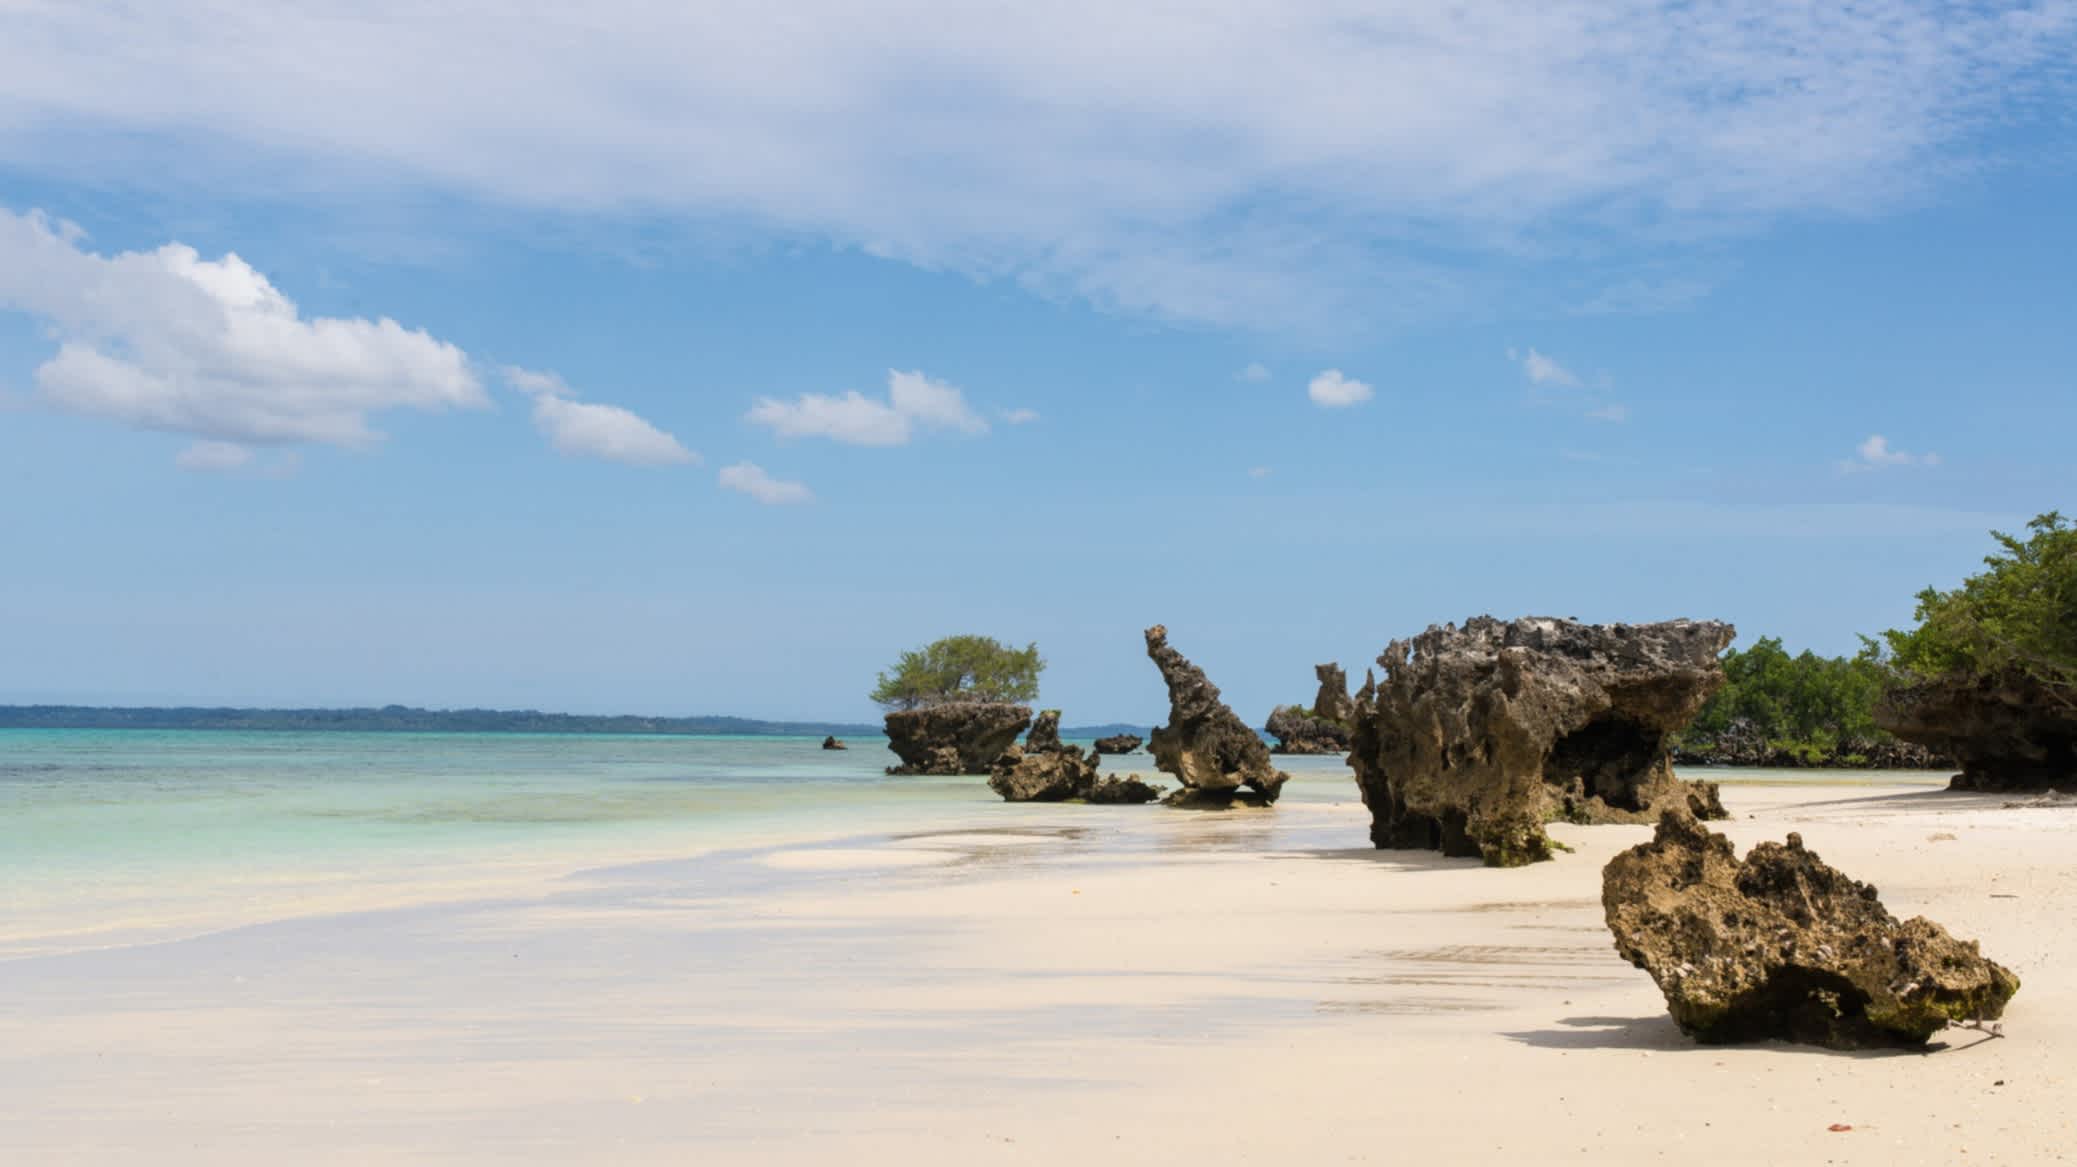 Plage de sable tropical et mer bleue sur l'île de Pemba, en Tanzanie.